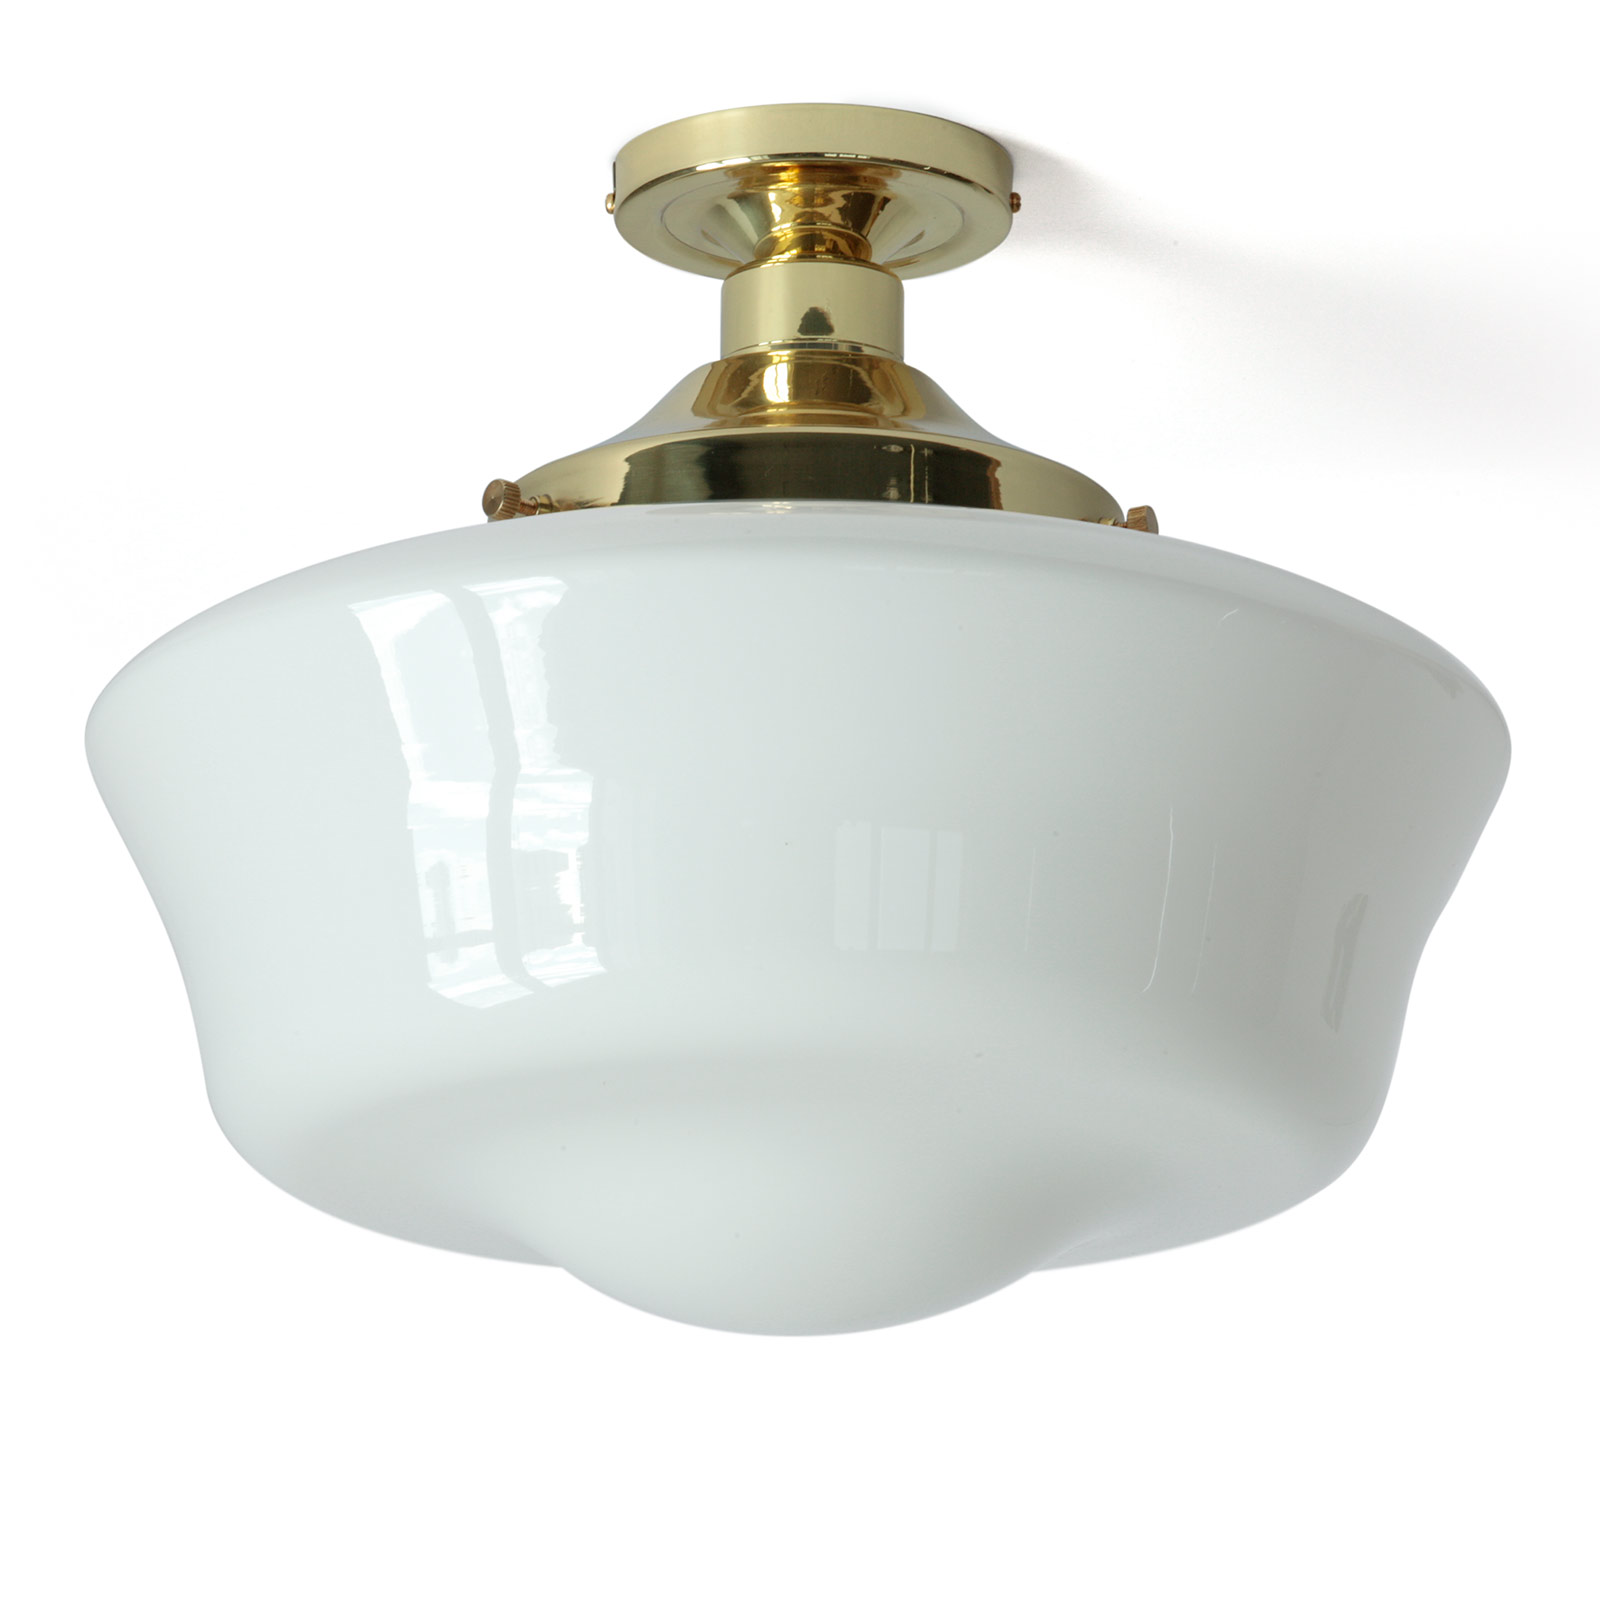 Traditionelle Deckenlampe mit Glasschirm Ø 35 cm: Traditionelle Deckenlampe (in der Ausführung Messing poliert): angenehme, blendfreie Beleuchtung